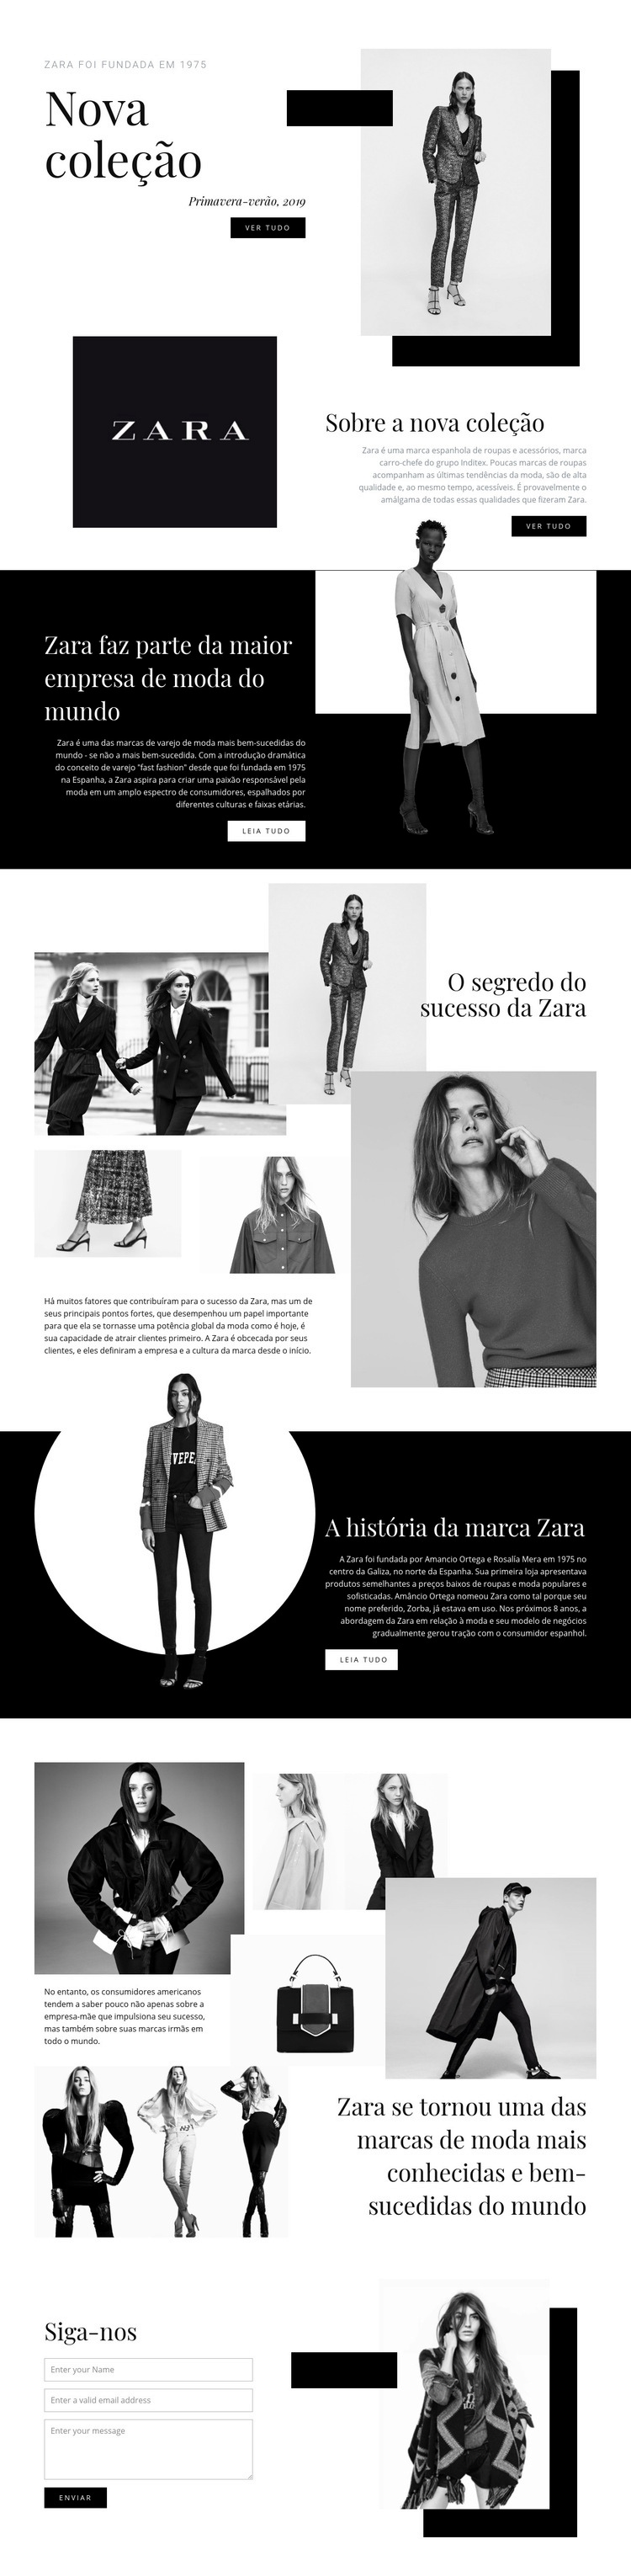 Coleção Zara Modelo